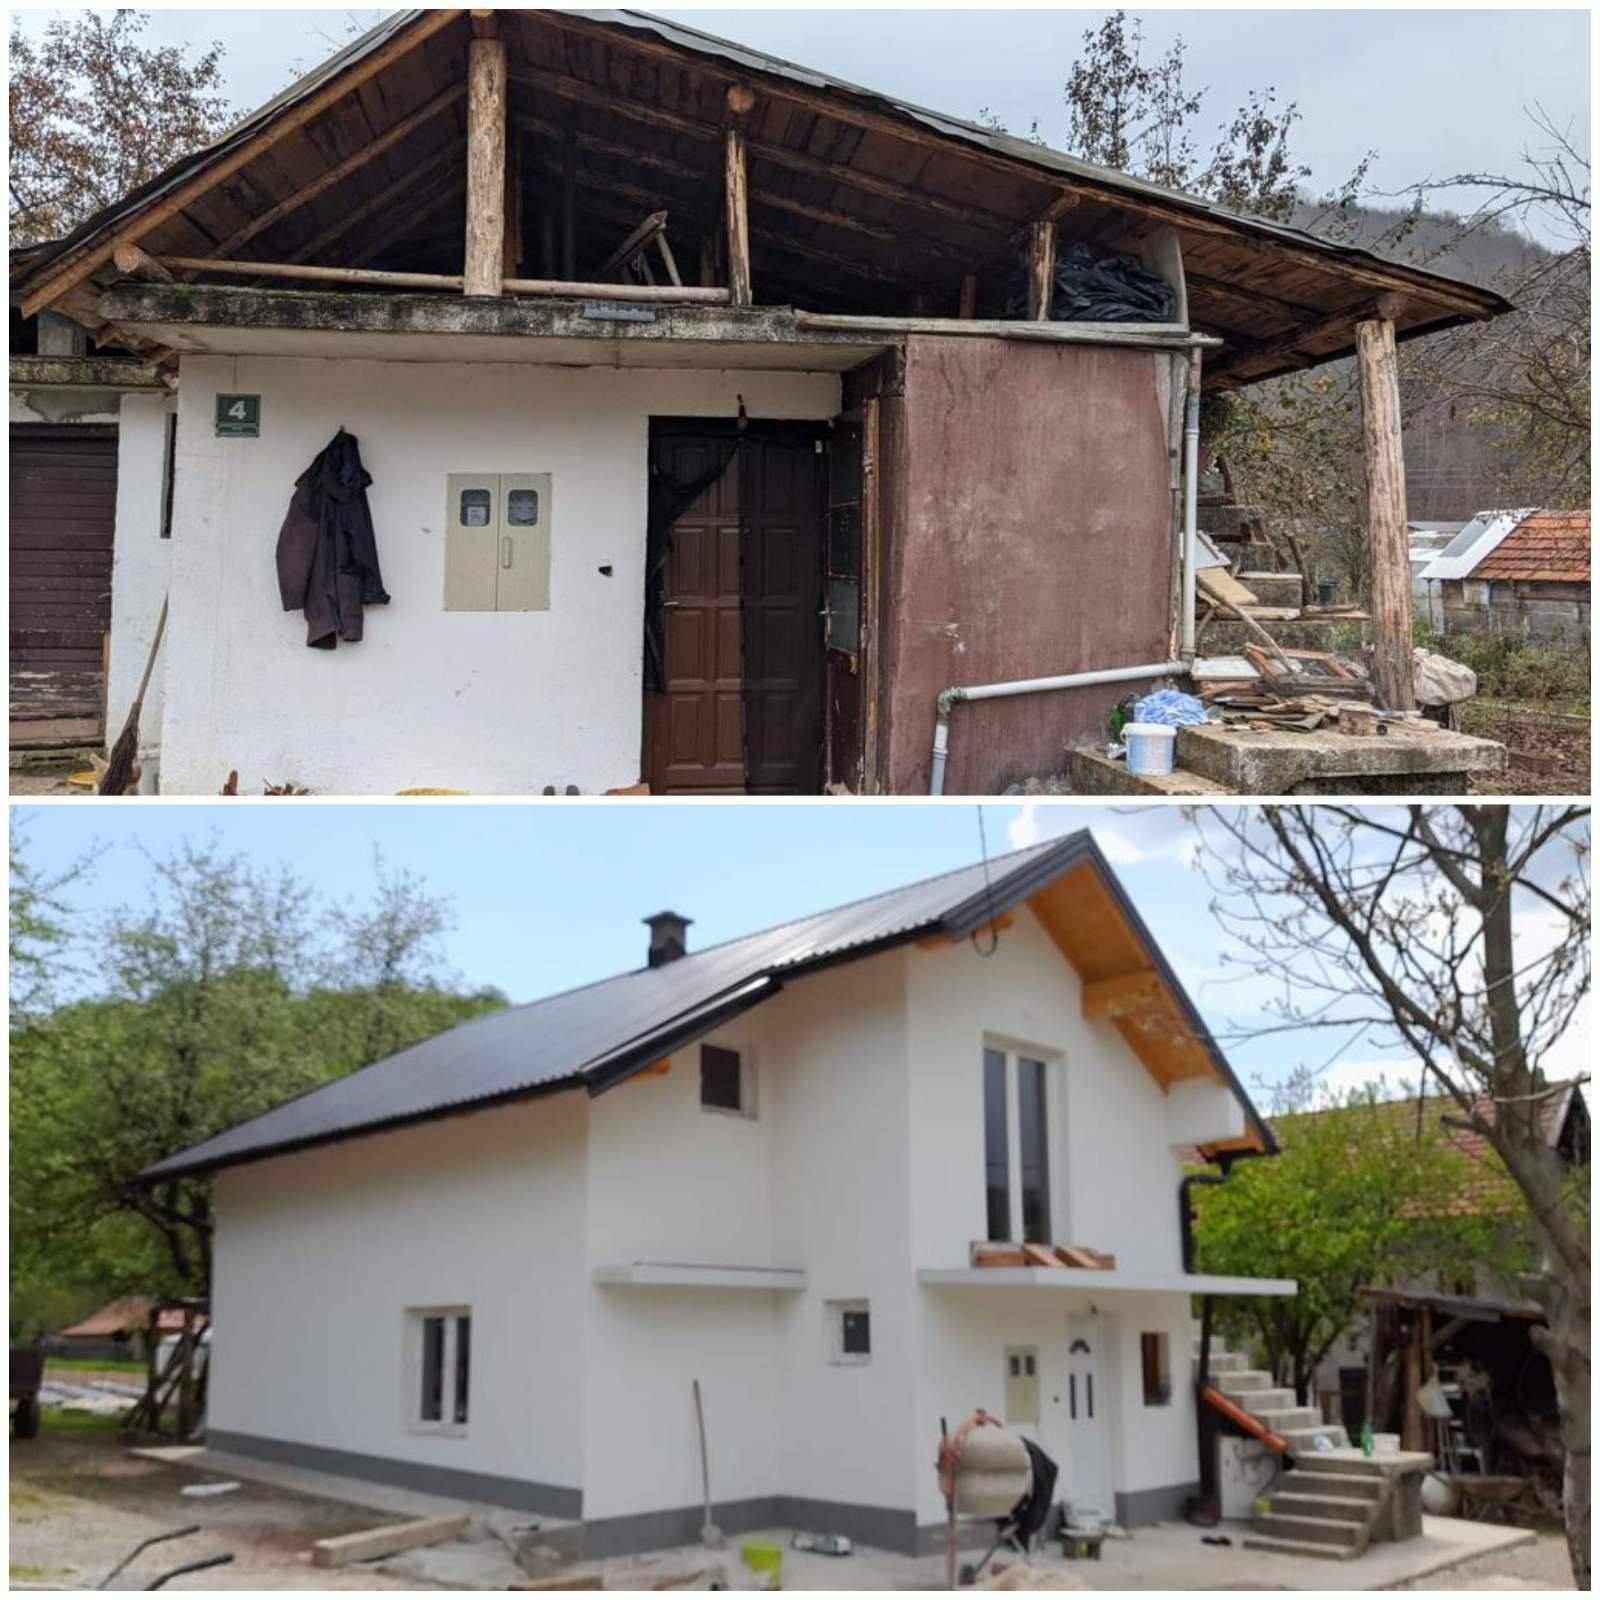 viber_image_2022-05-11_11-51-37-990.jpg - Islamska zajednica izgradila sprat i krov kuće porodici Sokolović